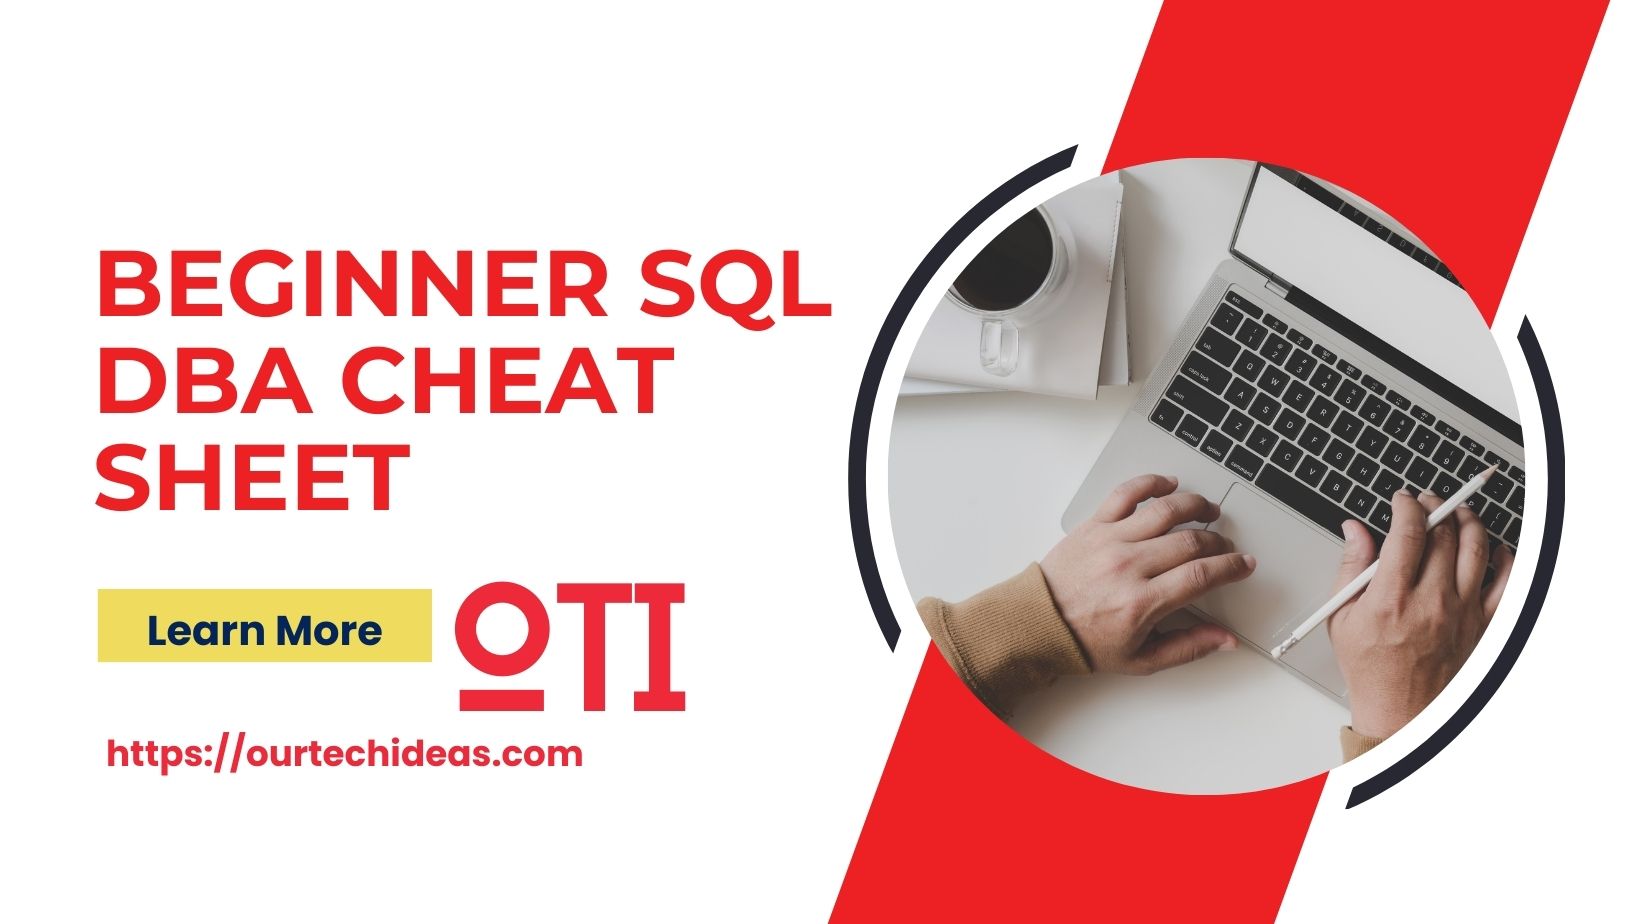 Beginner SQL DBA Cheat Sheet